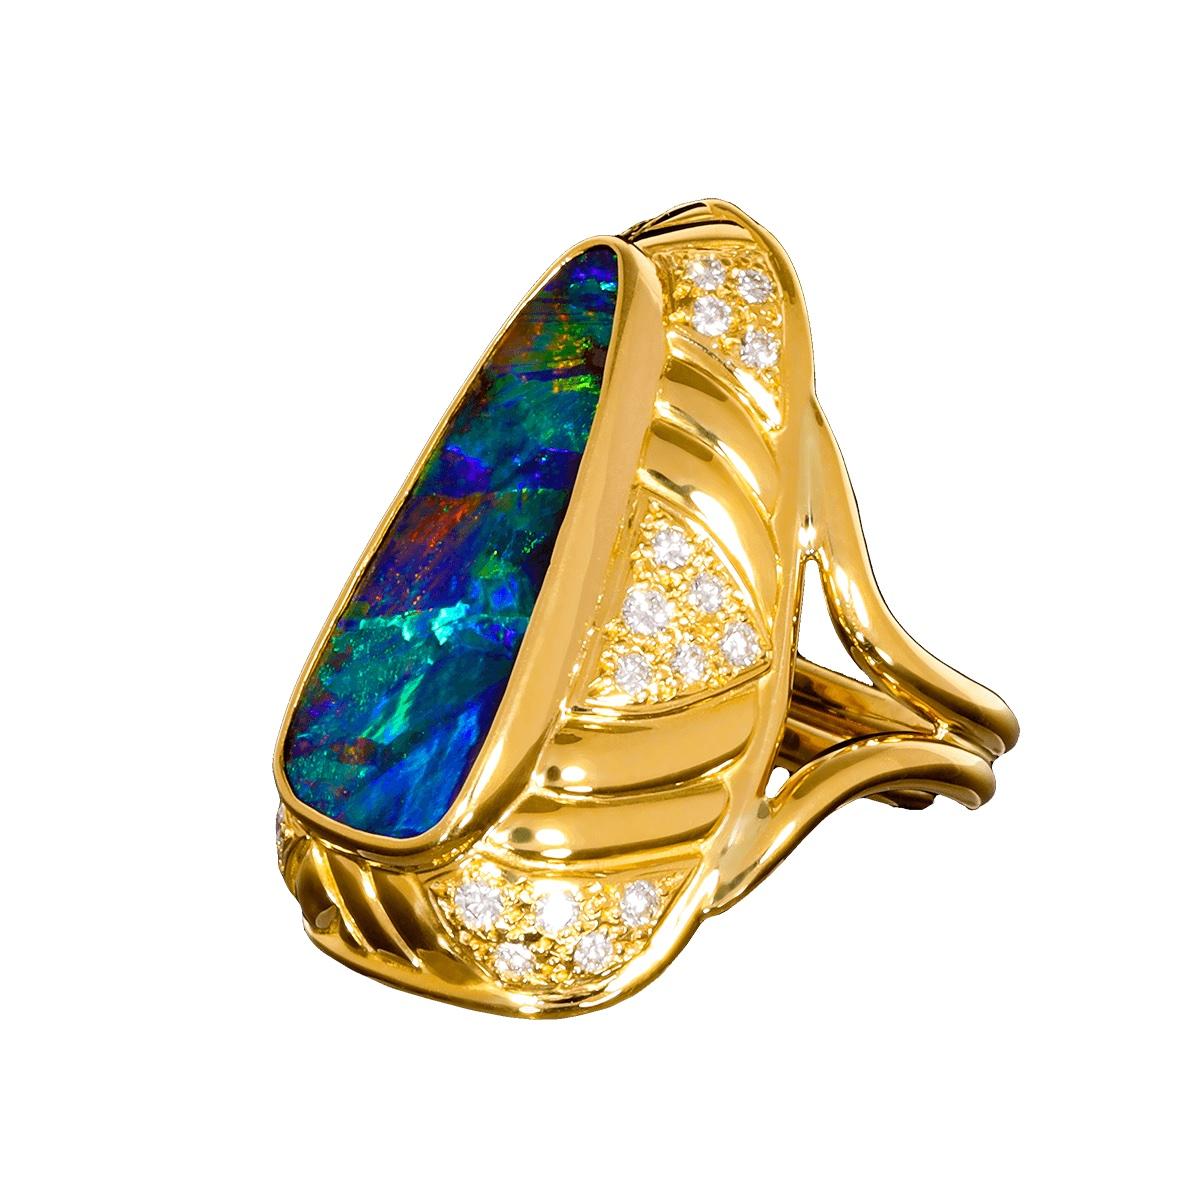 Dieser erstaunliche Boulder-Opal ist der beste Edelstein-Opal, den wir je in einem Ring hatten. Es hat eine herausragende Klarheit mit gestochen scharfen Farben und Mustern, die ihresgleichen sucht.

Das Block-Harlekin-Muster ist mit einem breiten